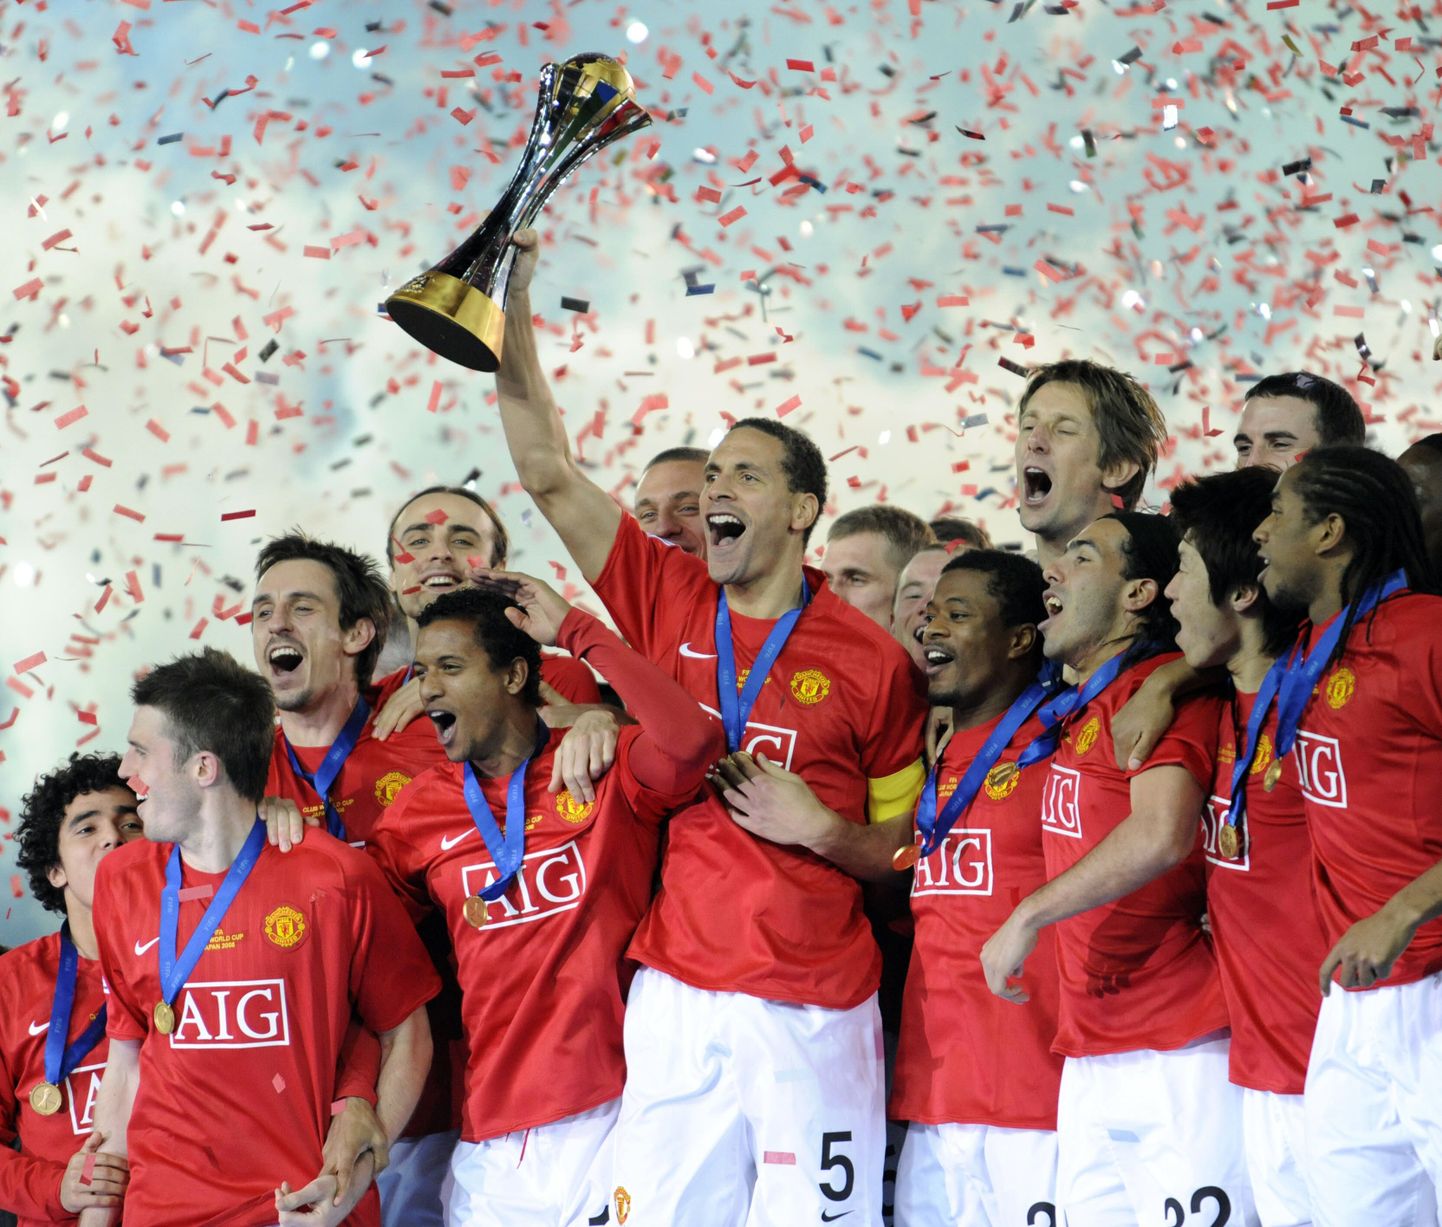 Manchester United võitis  FIFA klubide maailmameistrivõistlused. Finaalis alistati Wayne Rooney väravast Ekuadori klubi Liga de Quito 1:0.